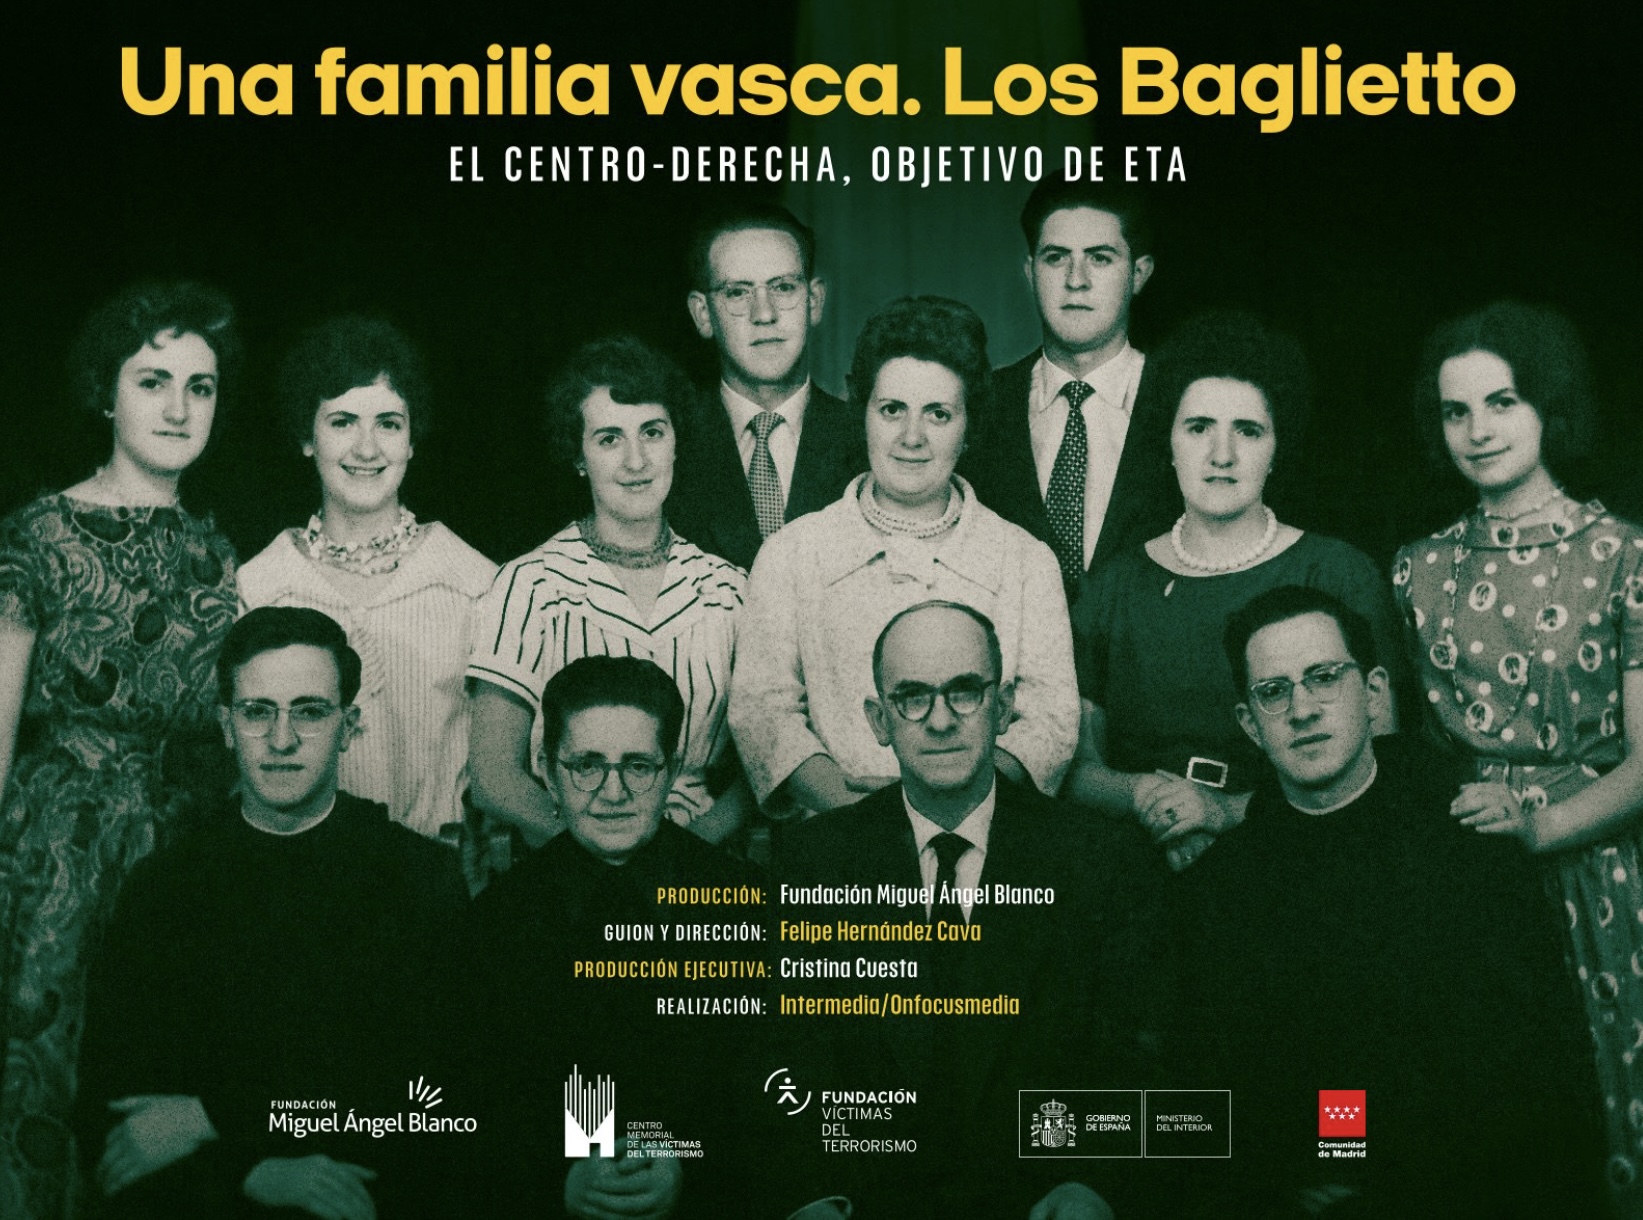 Presentación En El Memorial Del Documental “Una Familia Vasca. Los Baglietto”